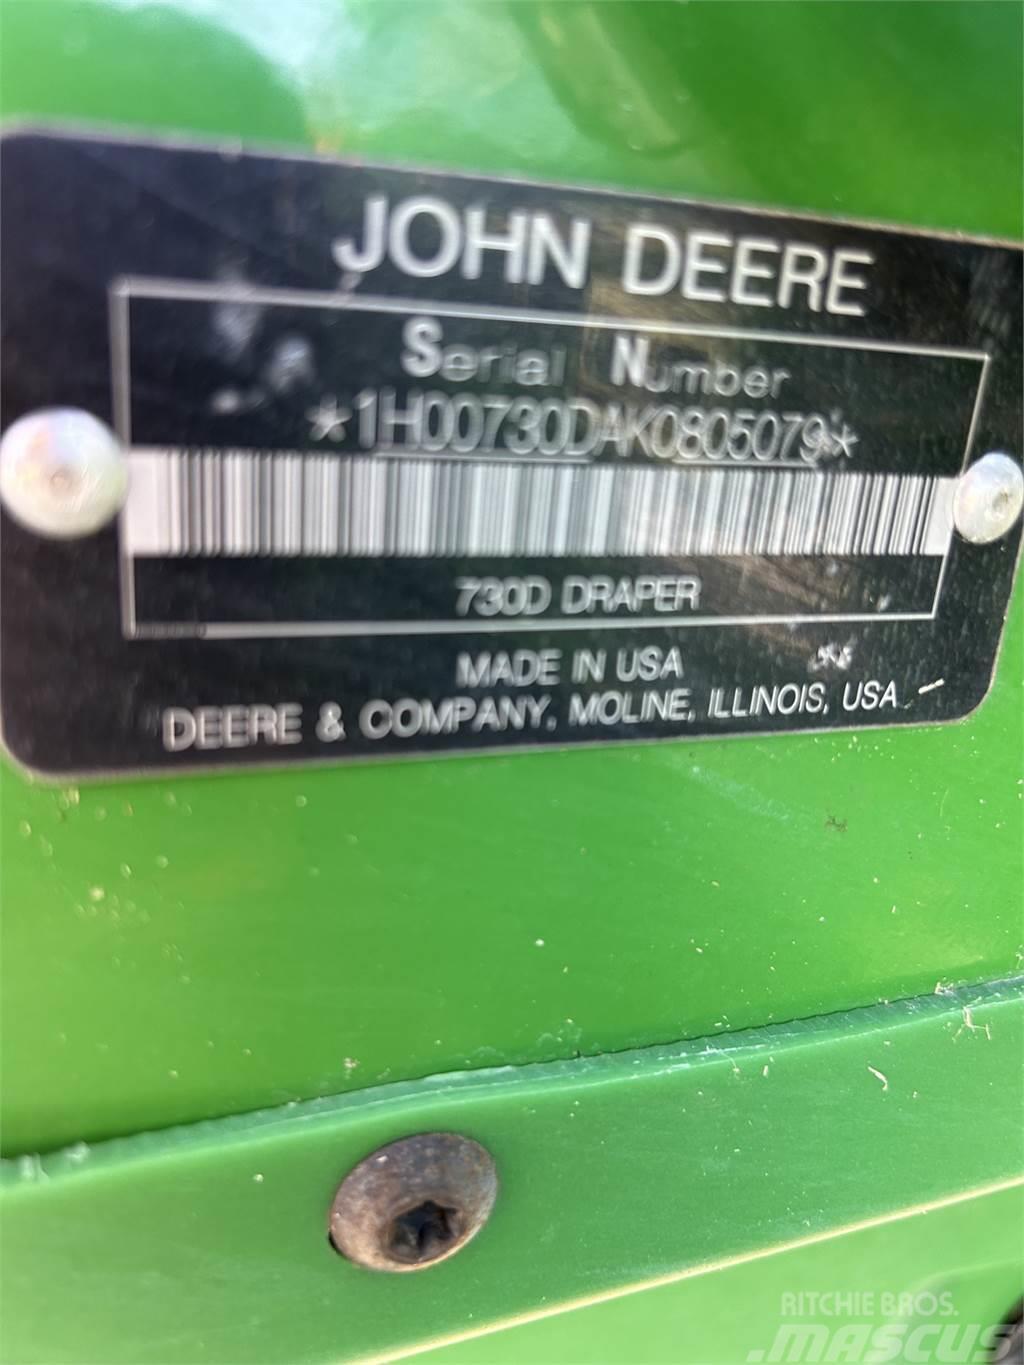 John Deere 730D Combine harvester spares & accessories